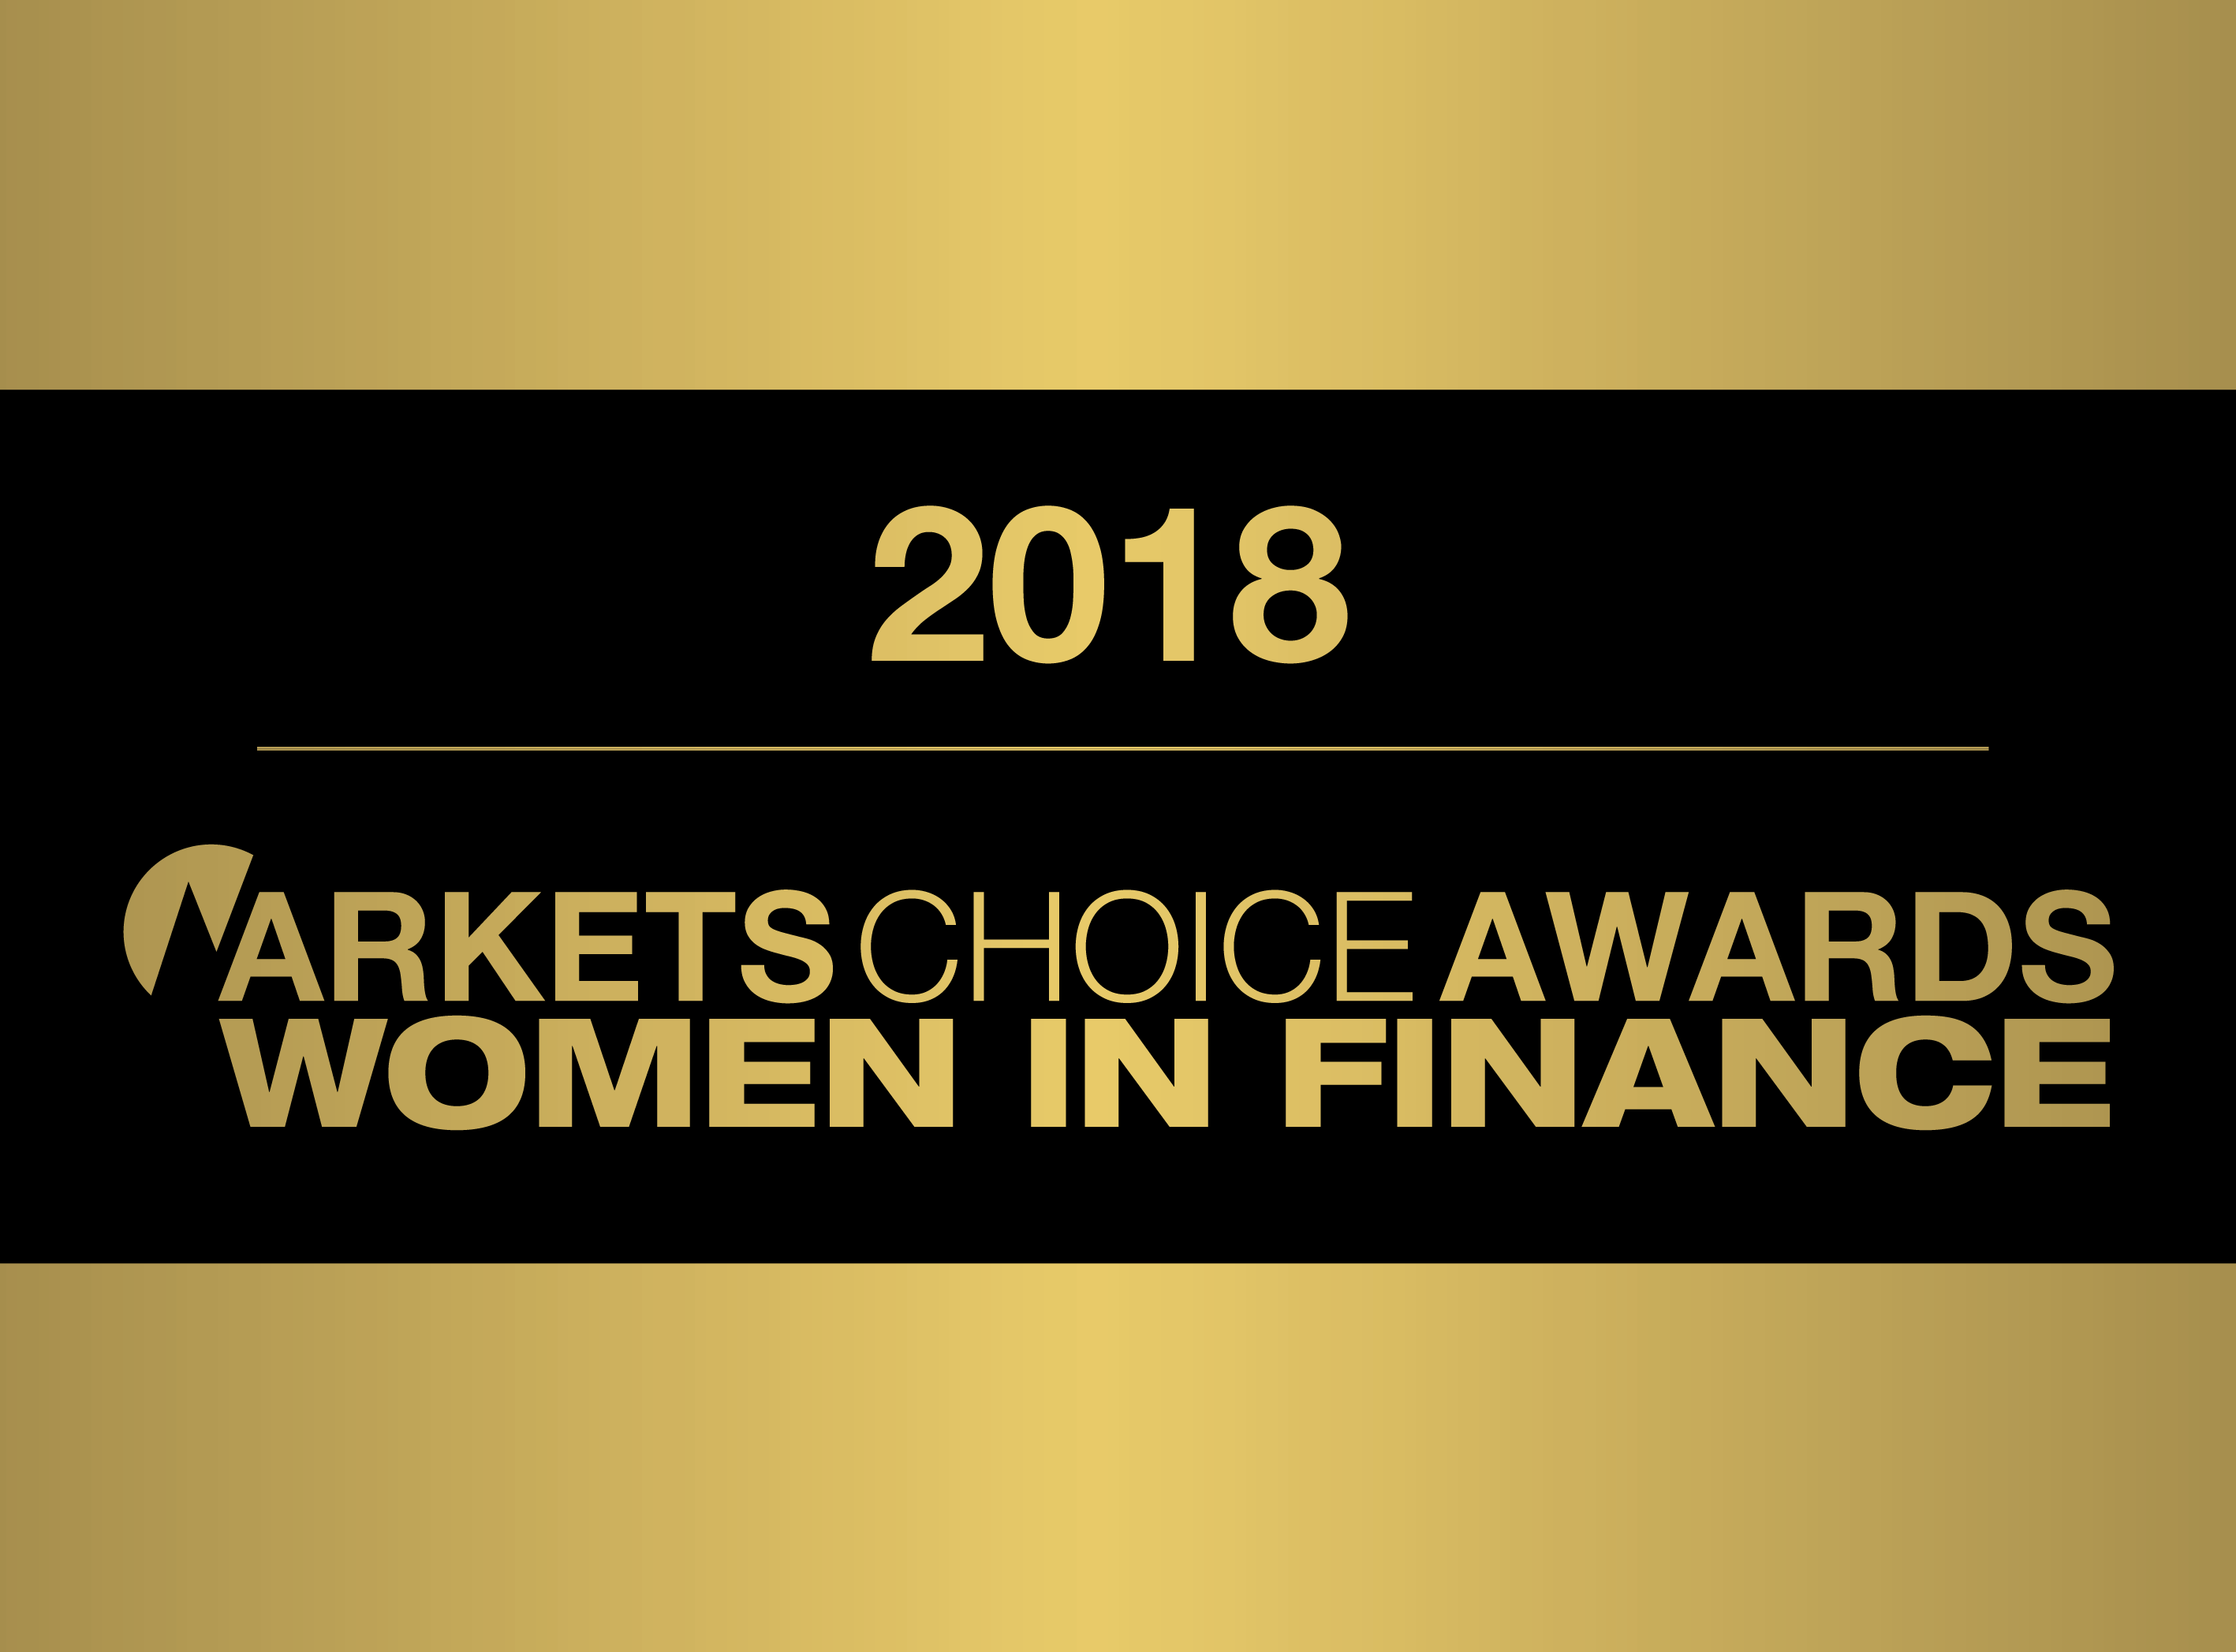 WOMEN IN FINANCE AWARDS 2018